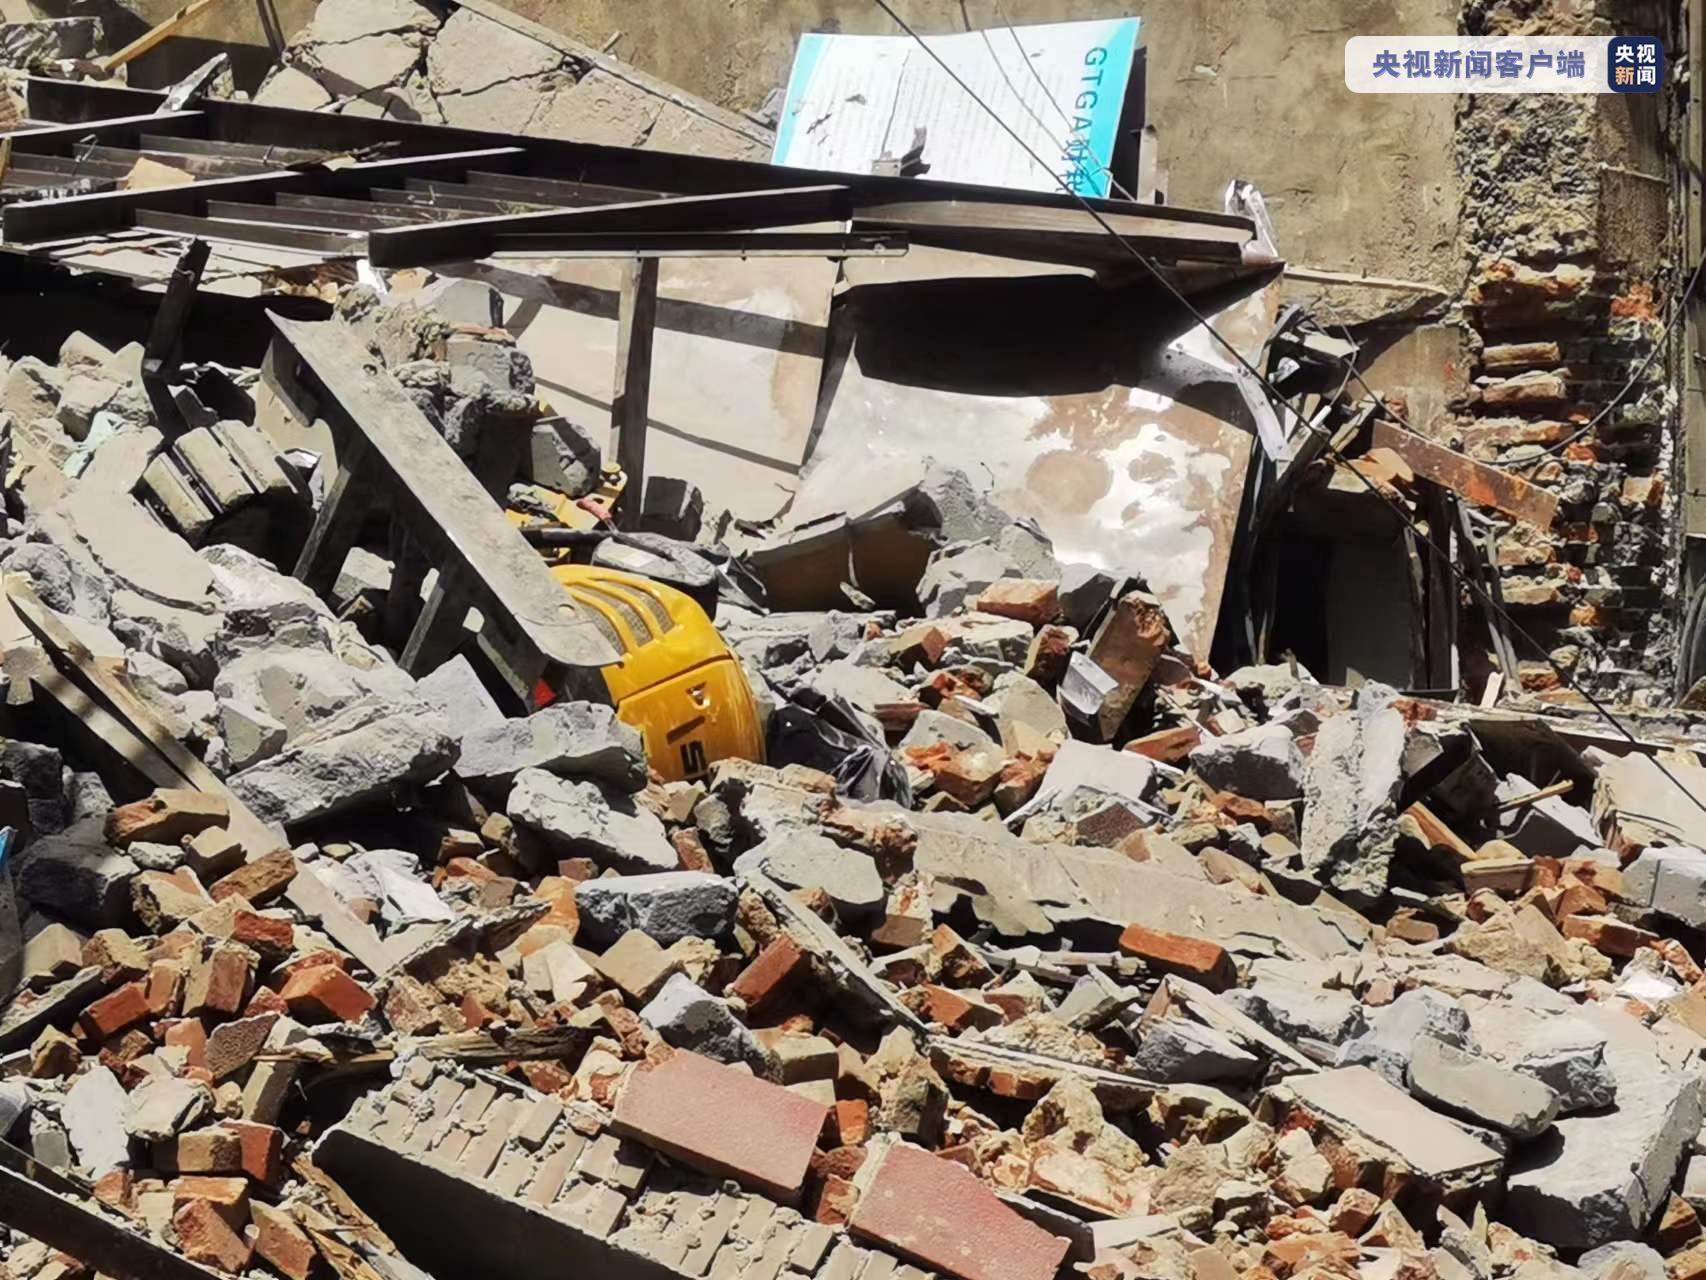 青岛一建筑在拆除时发生坍塌 已造成多人受伤